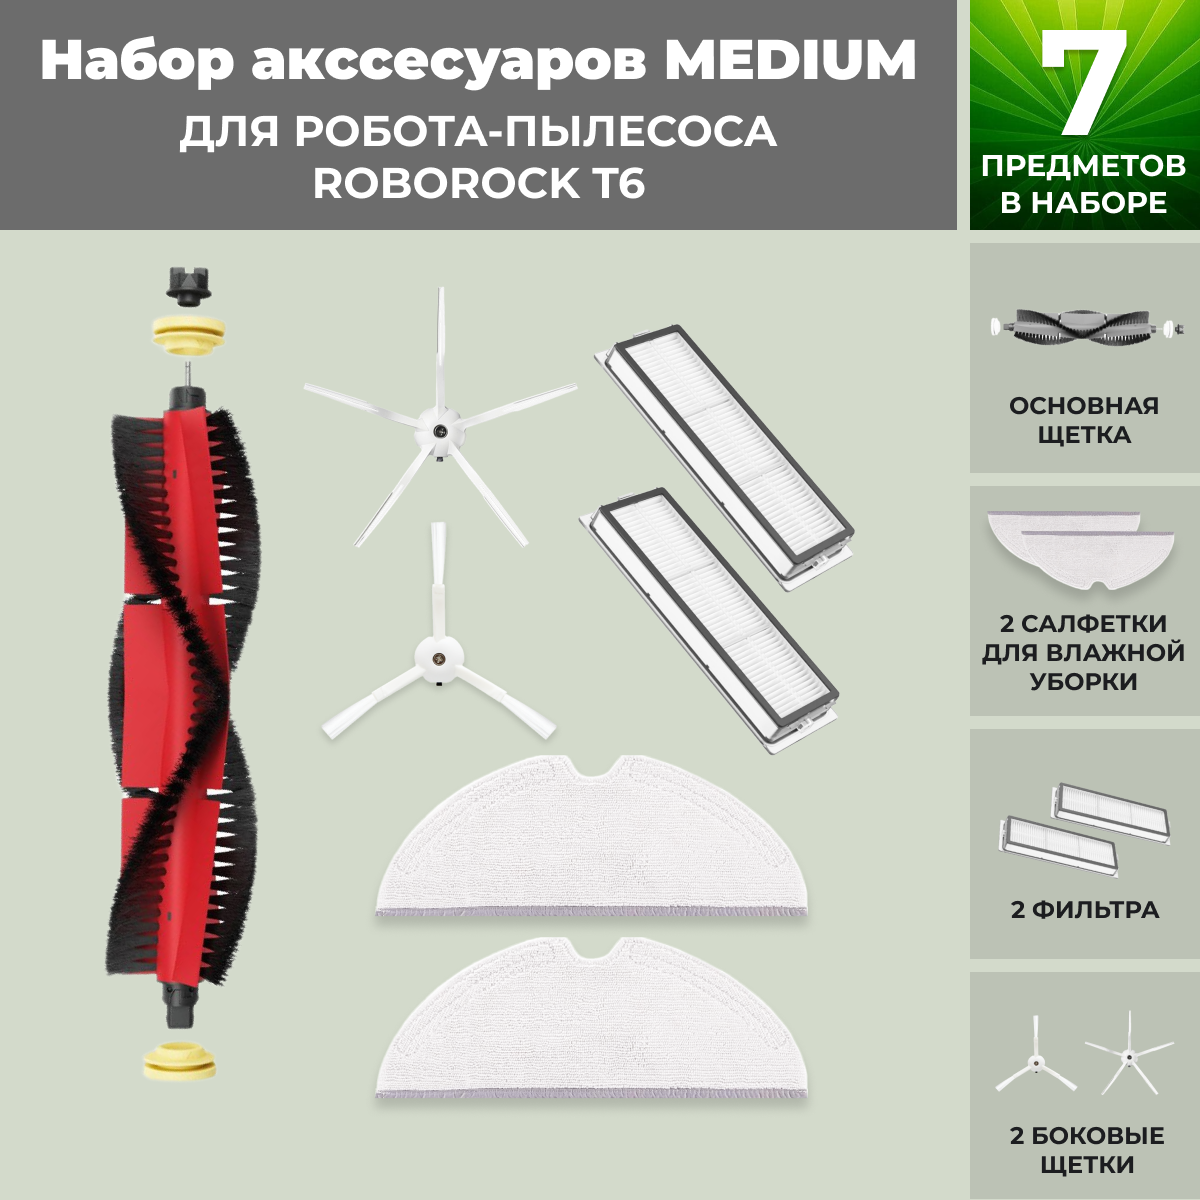 Набор аксессуаров Medium для робота-пылесоса Roborock T6, основная щетка с роликами, белые боковые щетки